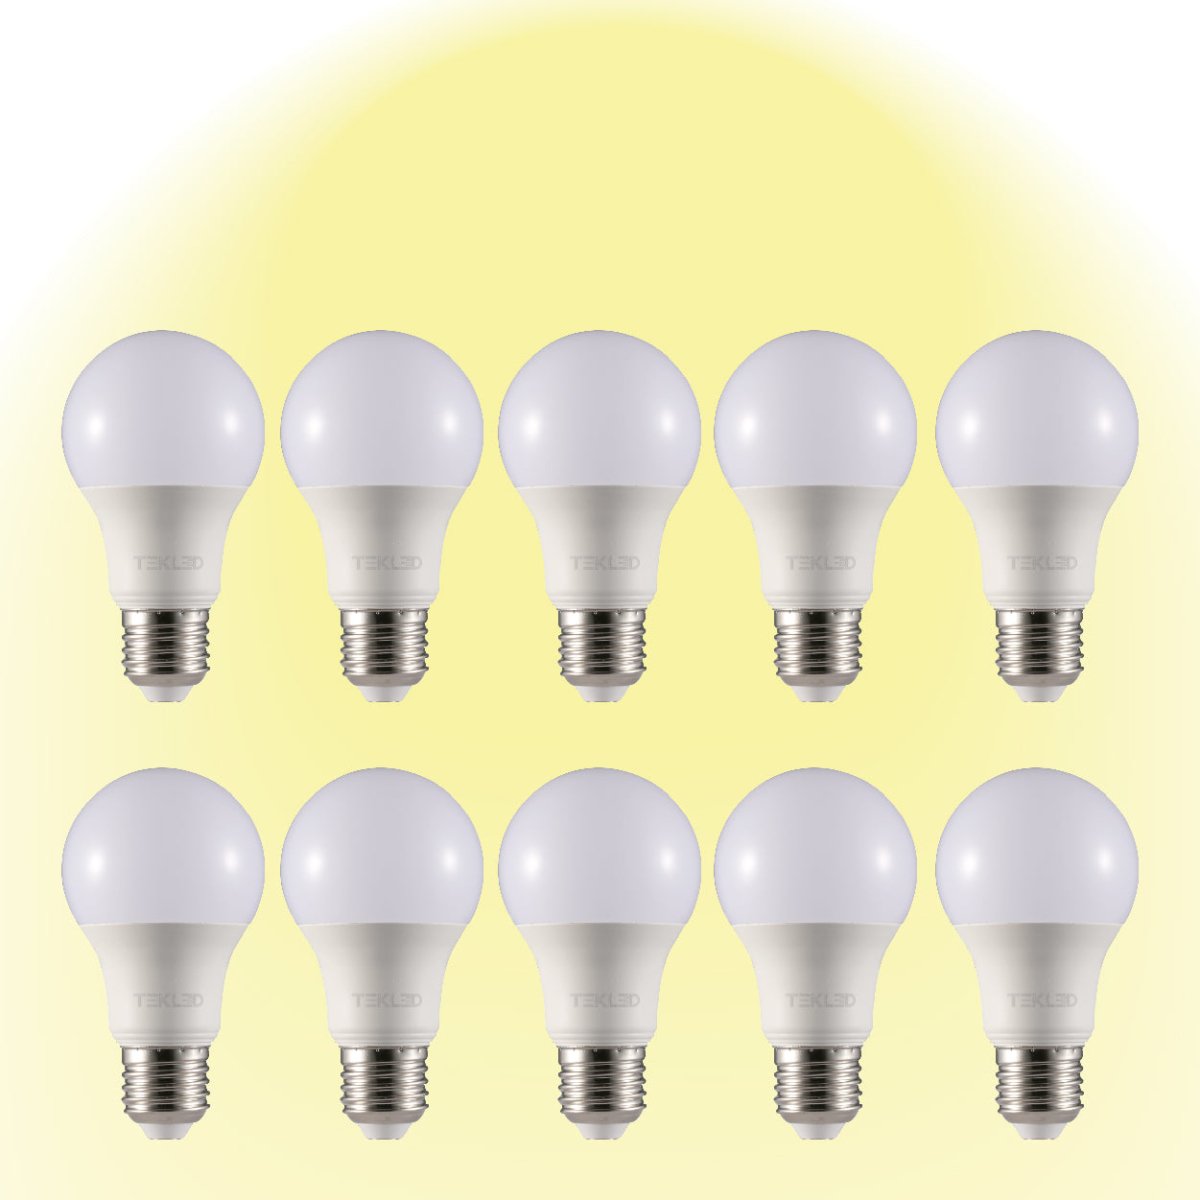 Virgo LED GLS Bulb A60 E27 Edison Screw 2700K Warm White 7 W Pack of 10 527-15642